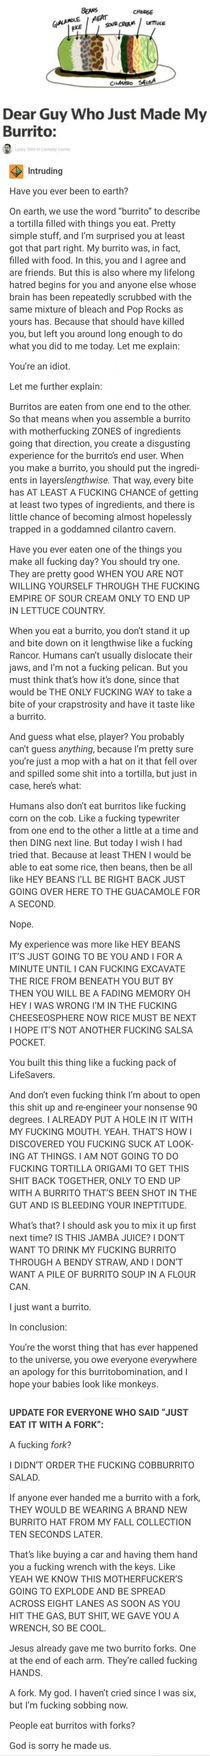 Burrito rant